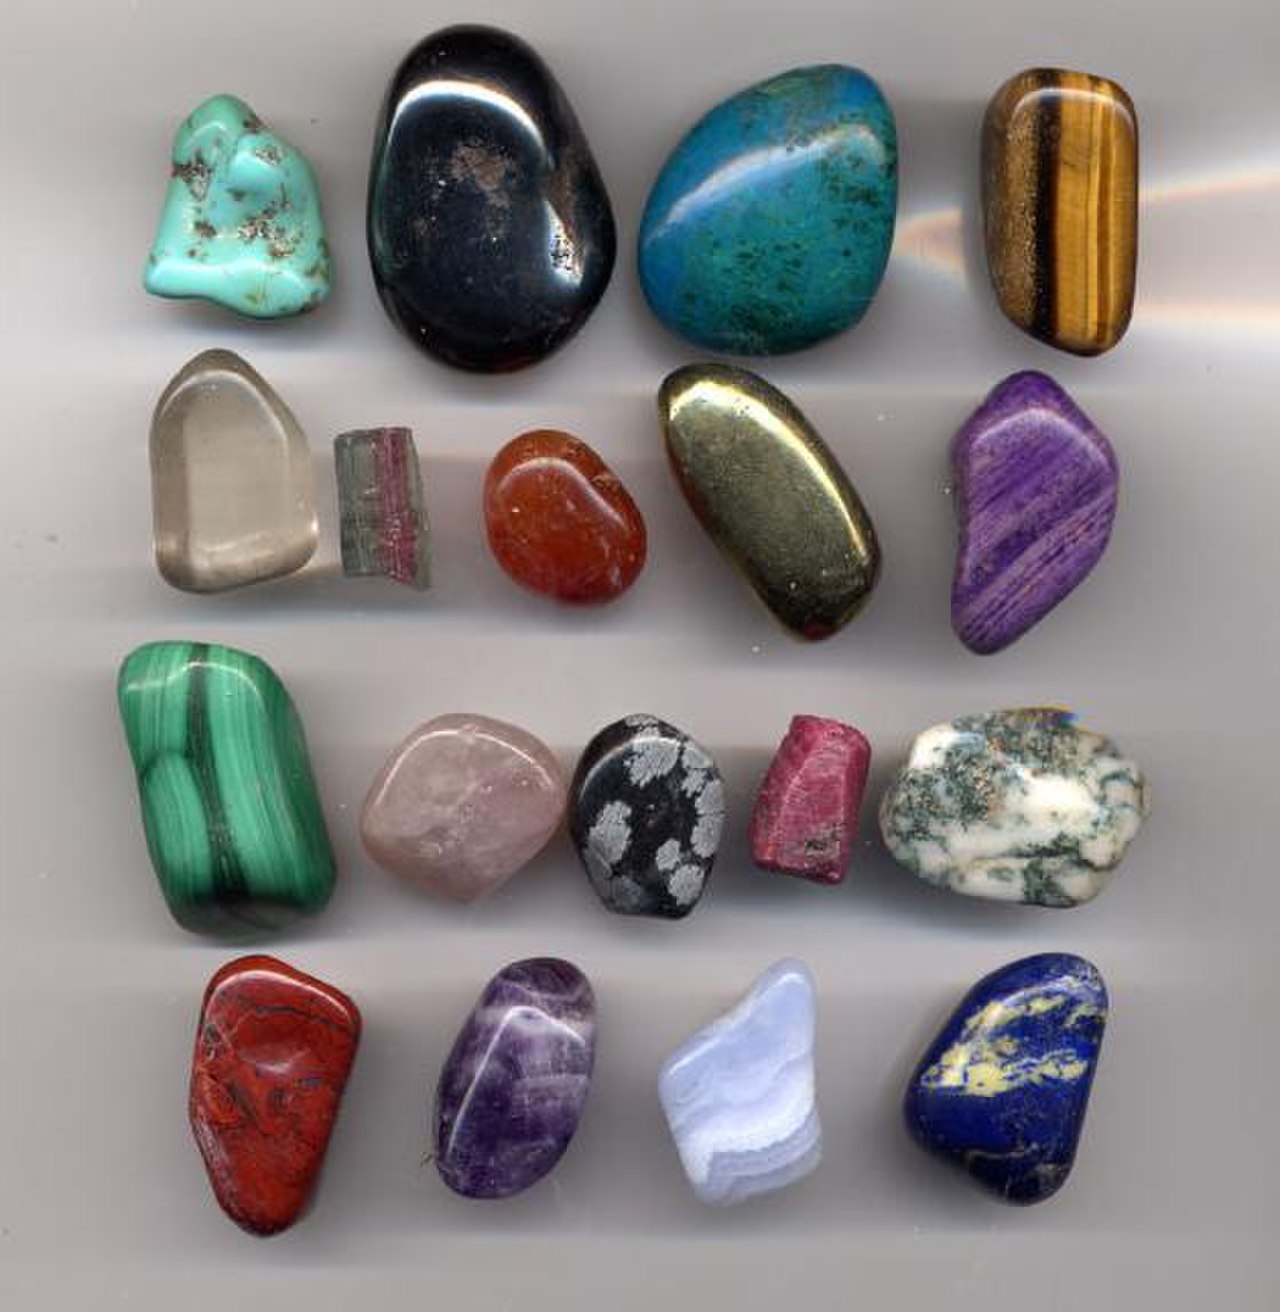 фото камней с названиями для окружающего мира